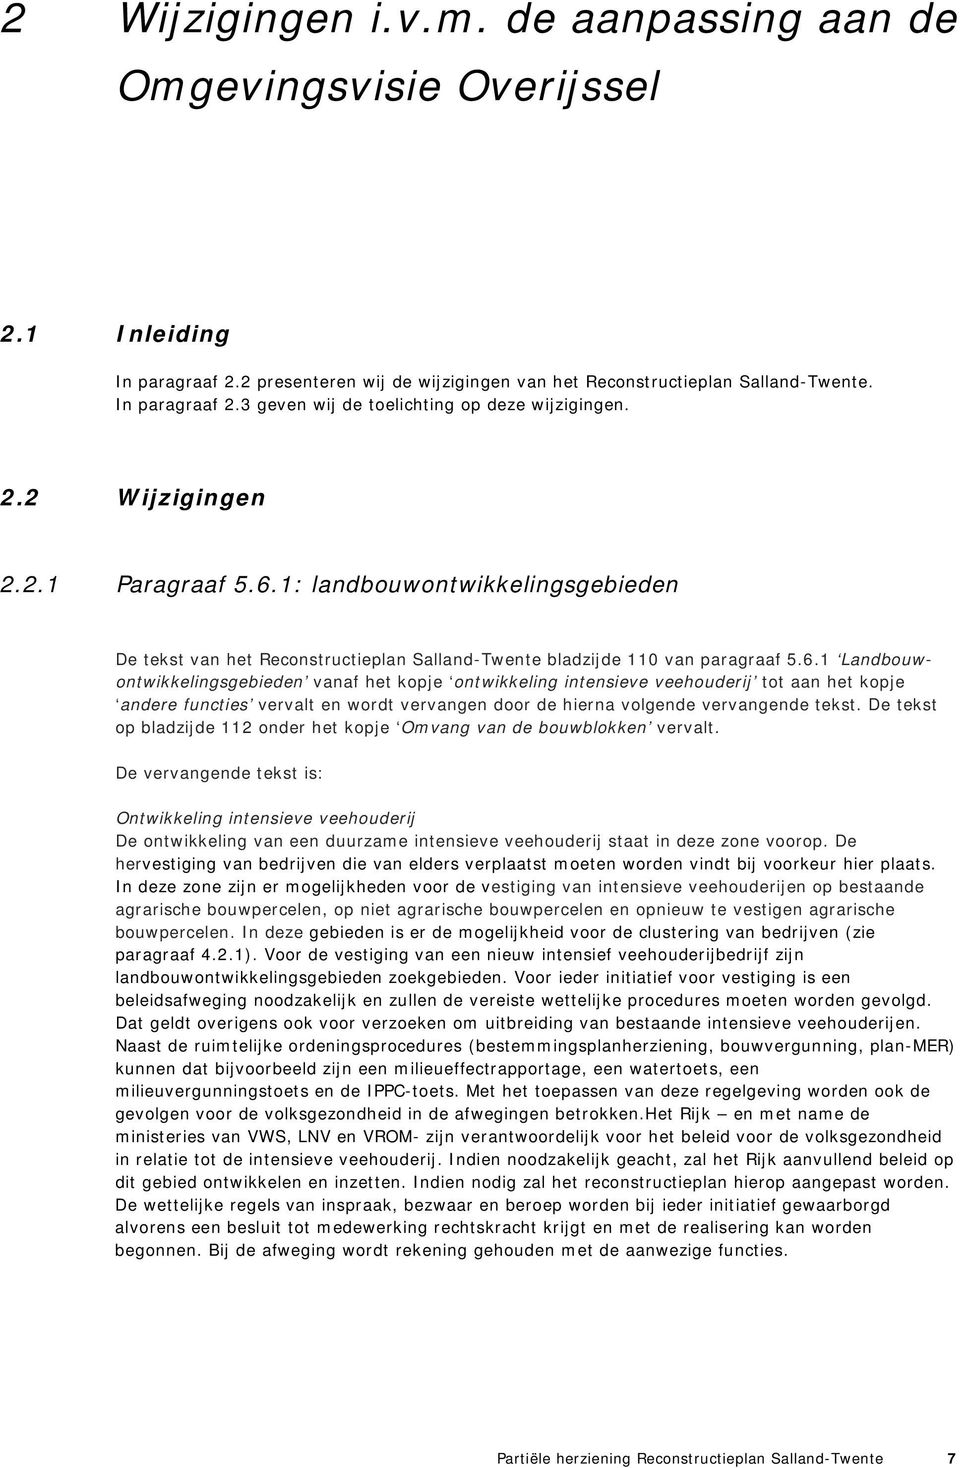 1: landbouwontwikkelingsgebieden De tekst van het Reconstructieplan Salland-Twente bladzijde 110 van paragraaf 5.6.